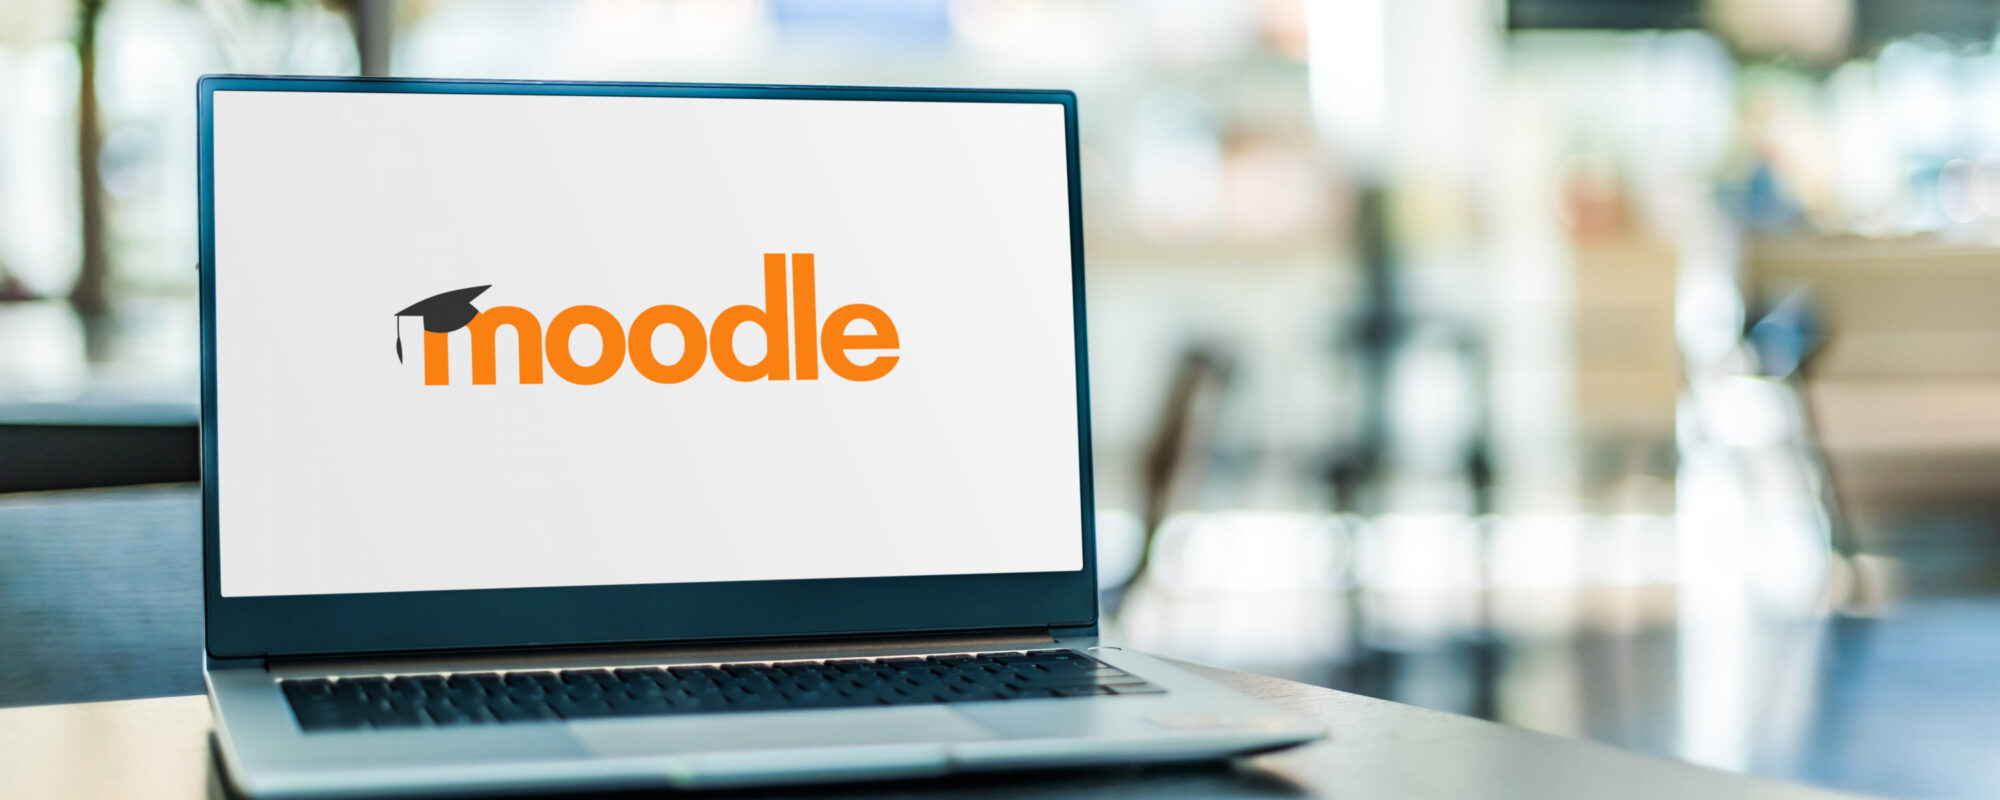 Laptop mit dem Moodle Logo